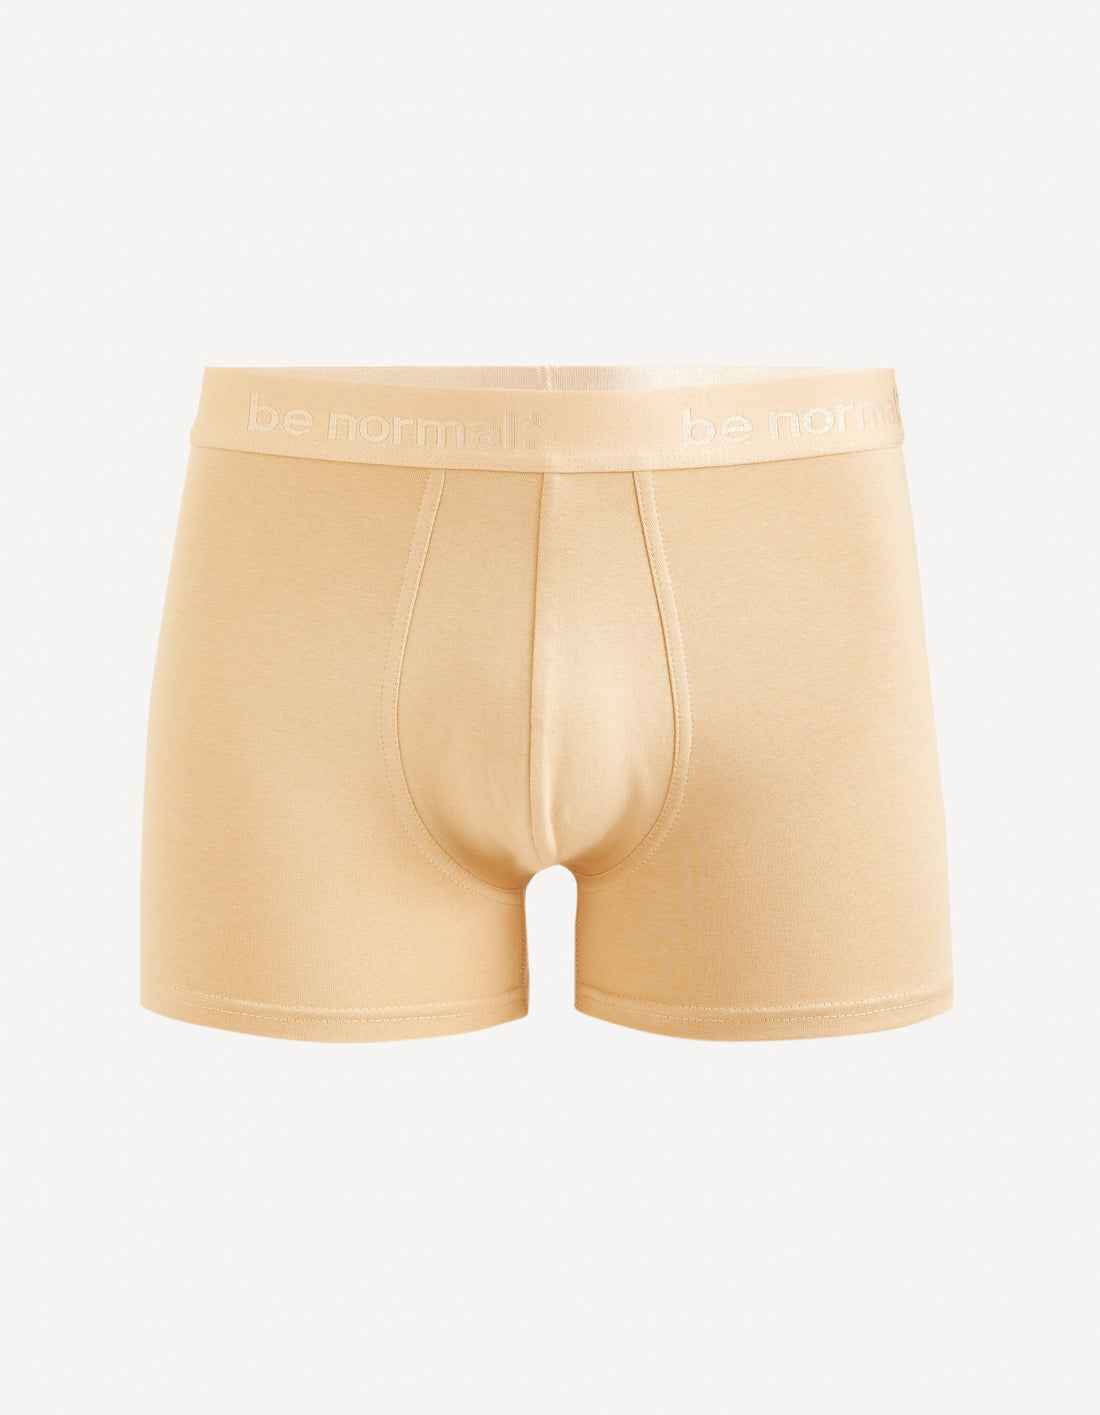 Stretch Cotton Boxer Shorts - Beige_BINORMAL_BEIGE_01